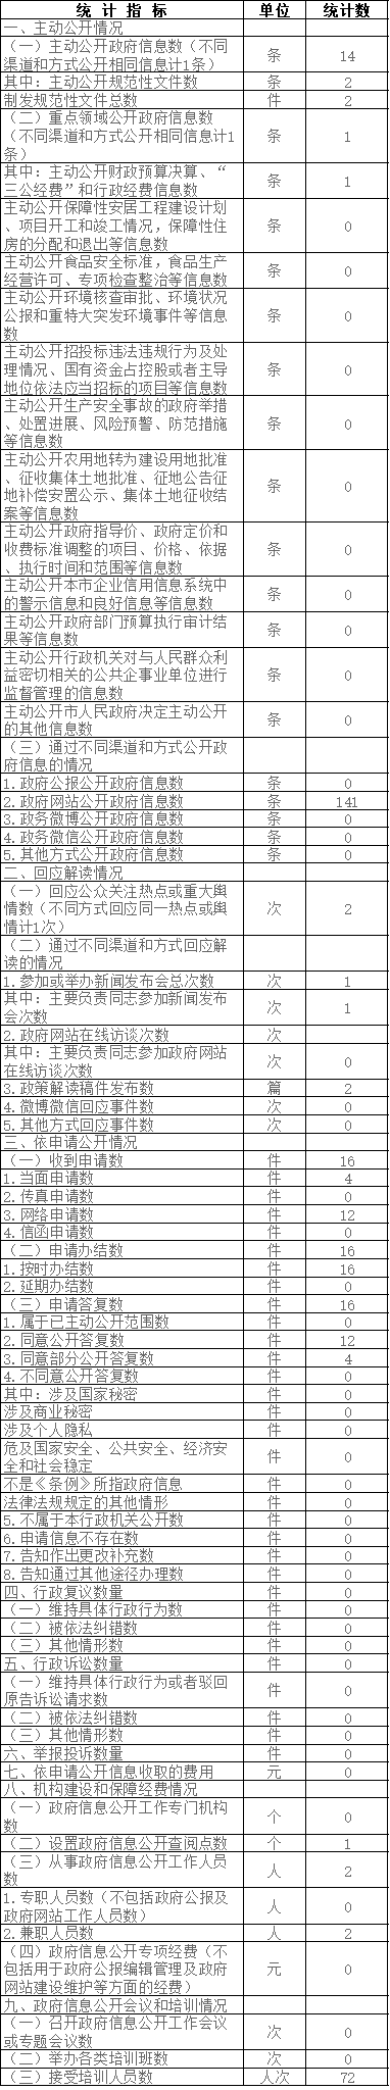 北京住房公積金管理中心政府信息公開情況統計表(2017年度)